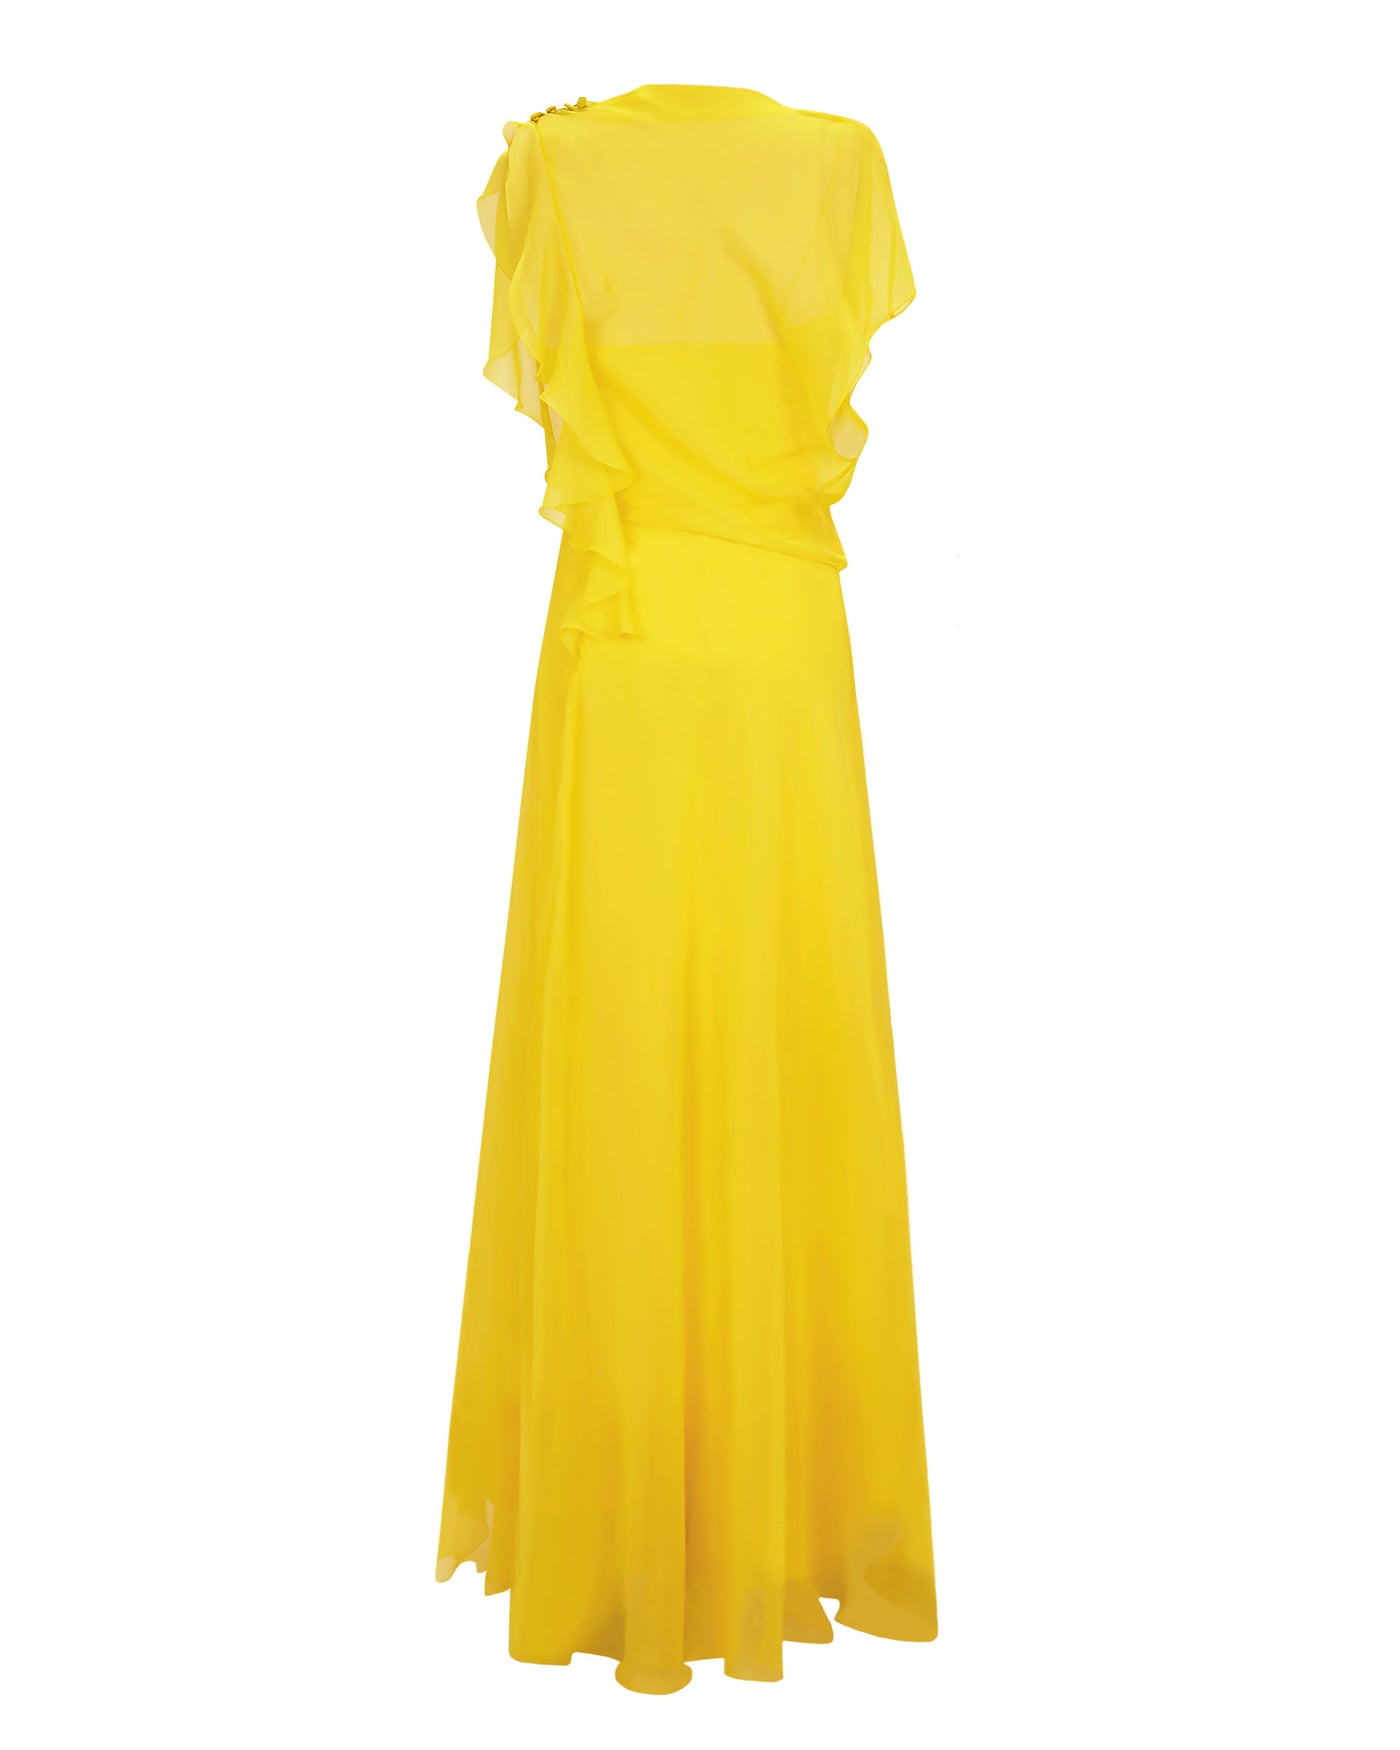 Draped Yellow Chiffon Dress – Gemy Maalouf